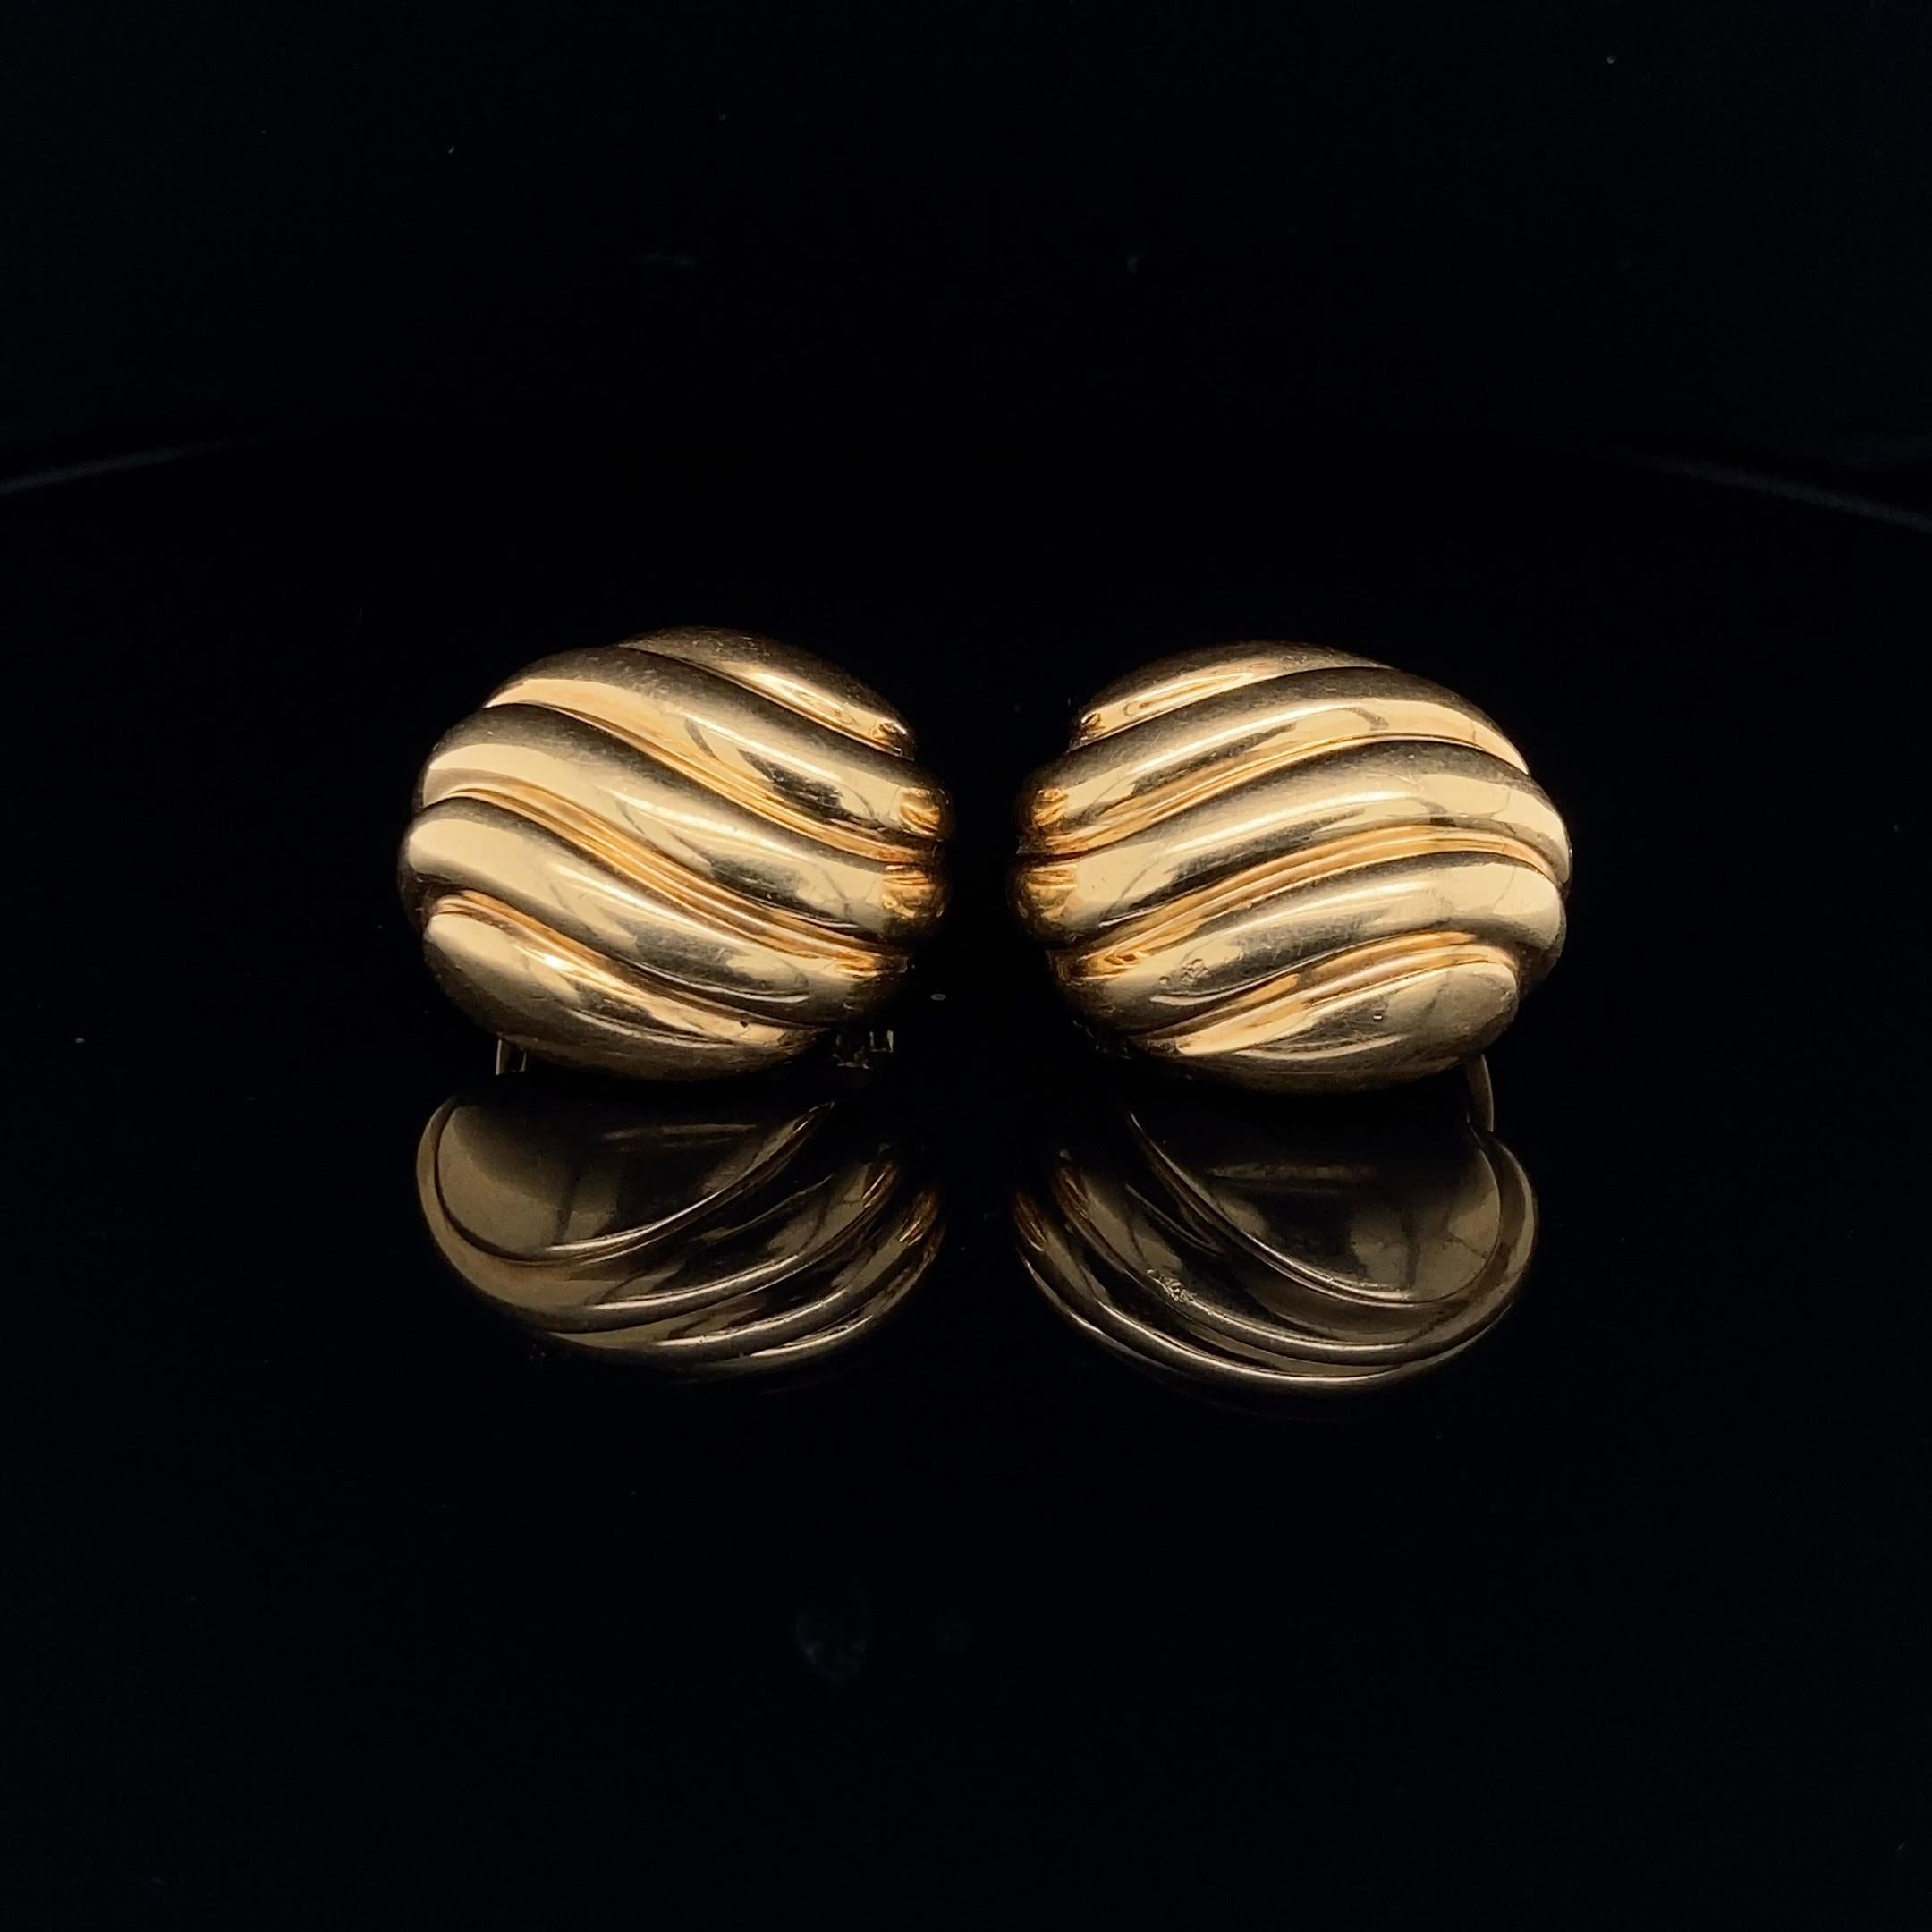 Ovale Ohrclips aus 18 Karat Gelbgold von Cartier mit einem reliefartigen Wirbelmuster. 
Die Clips haben einen schönen Vintage-Charakter, sind vollständig signiert und nummeriert Cartier 603680, gestempelt 750 und mit Französisch Assay Marke.
Länge: